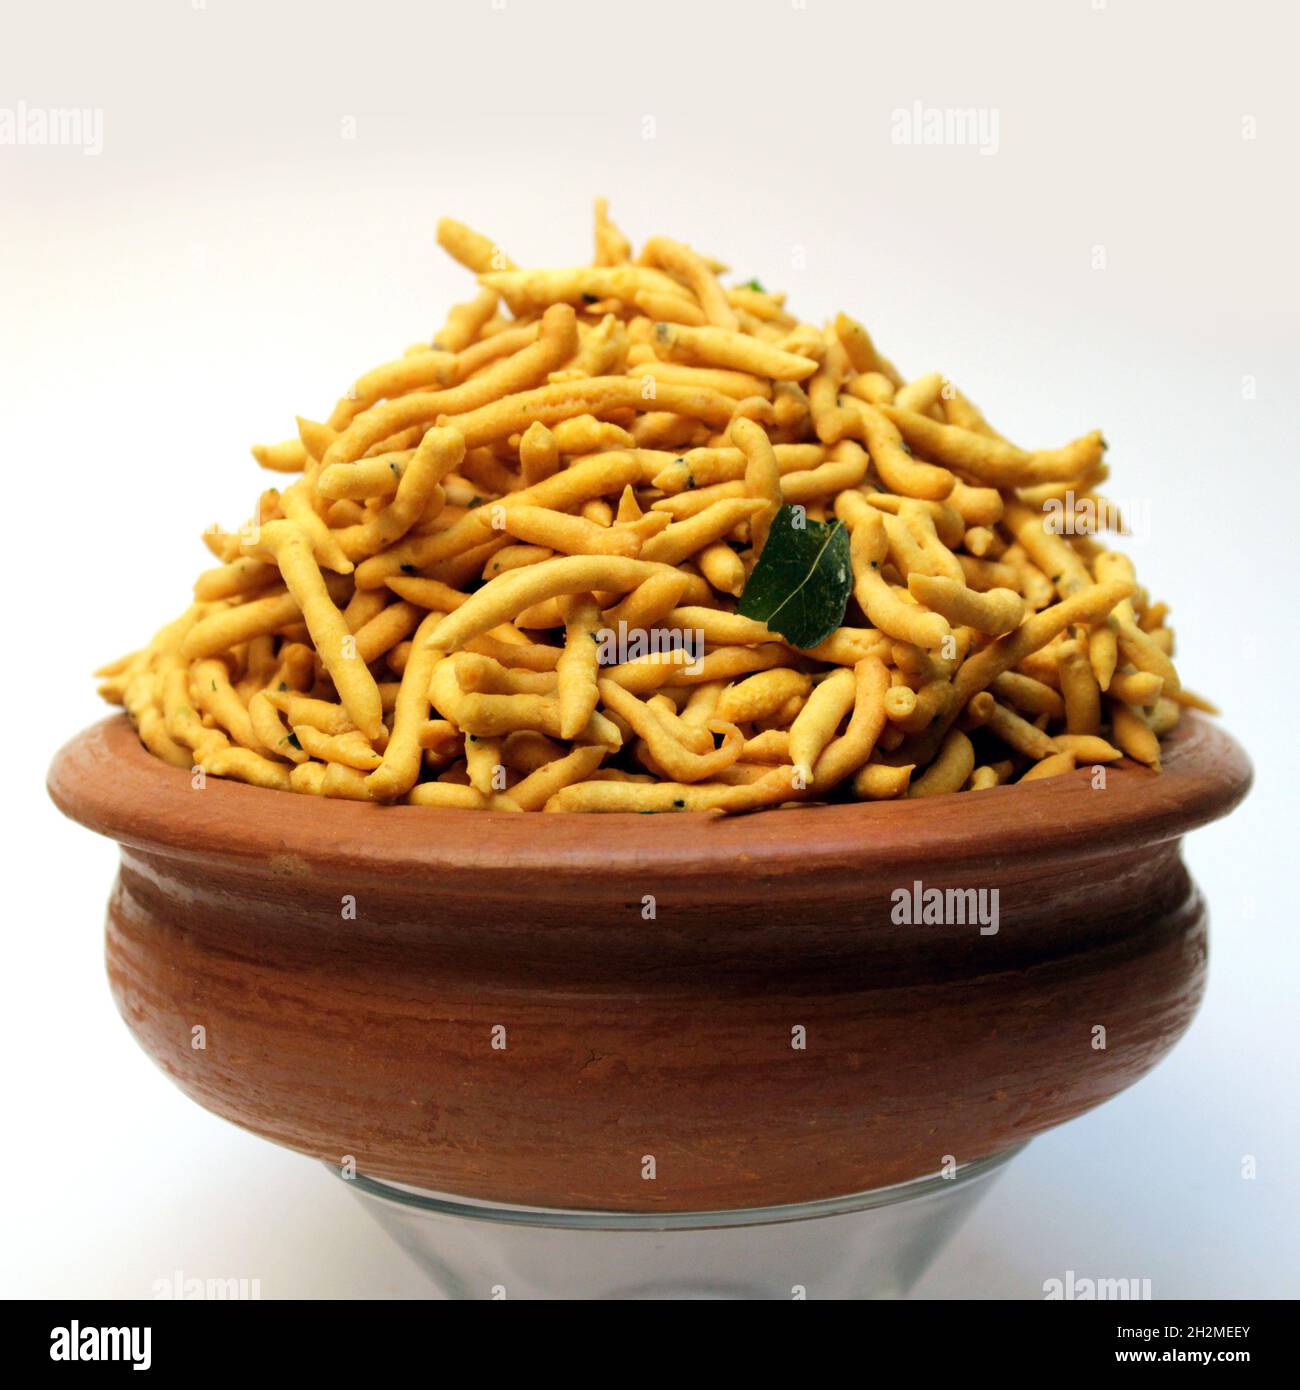 Kerala traditional snacks Stock Photo